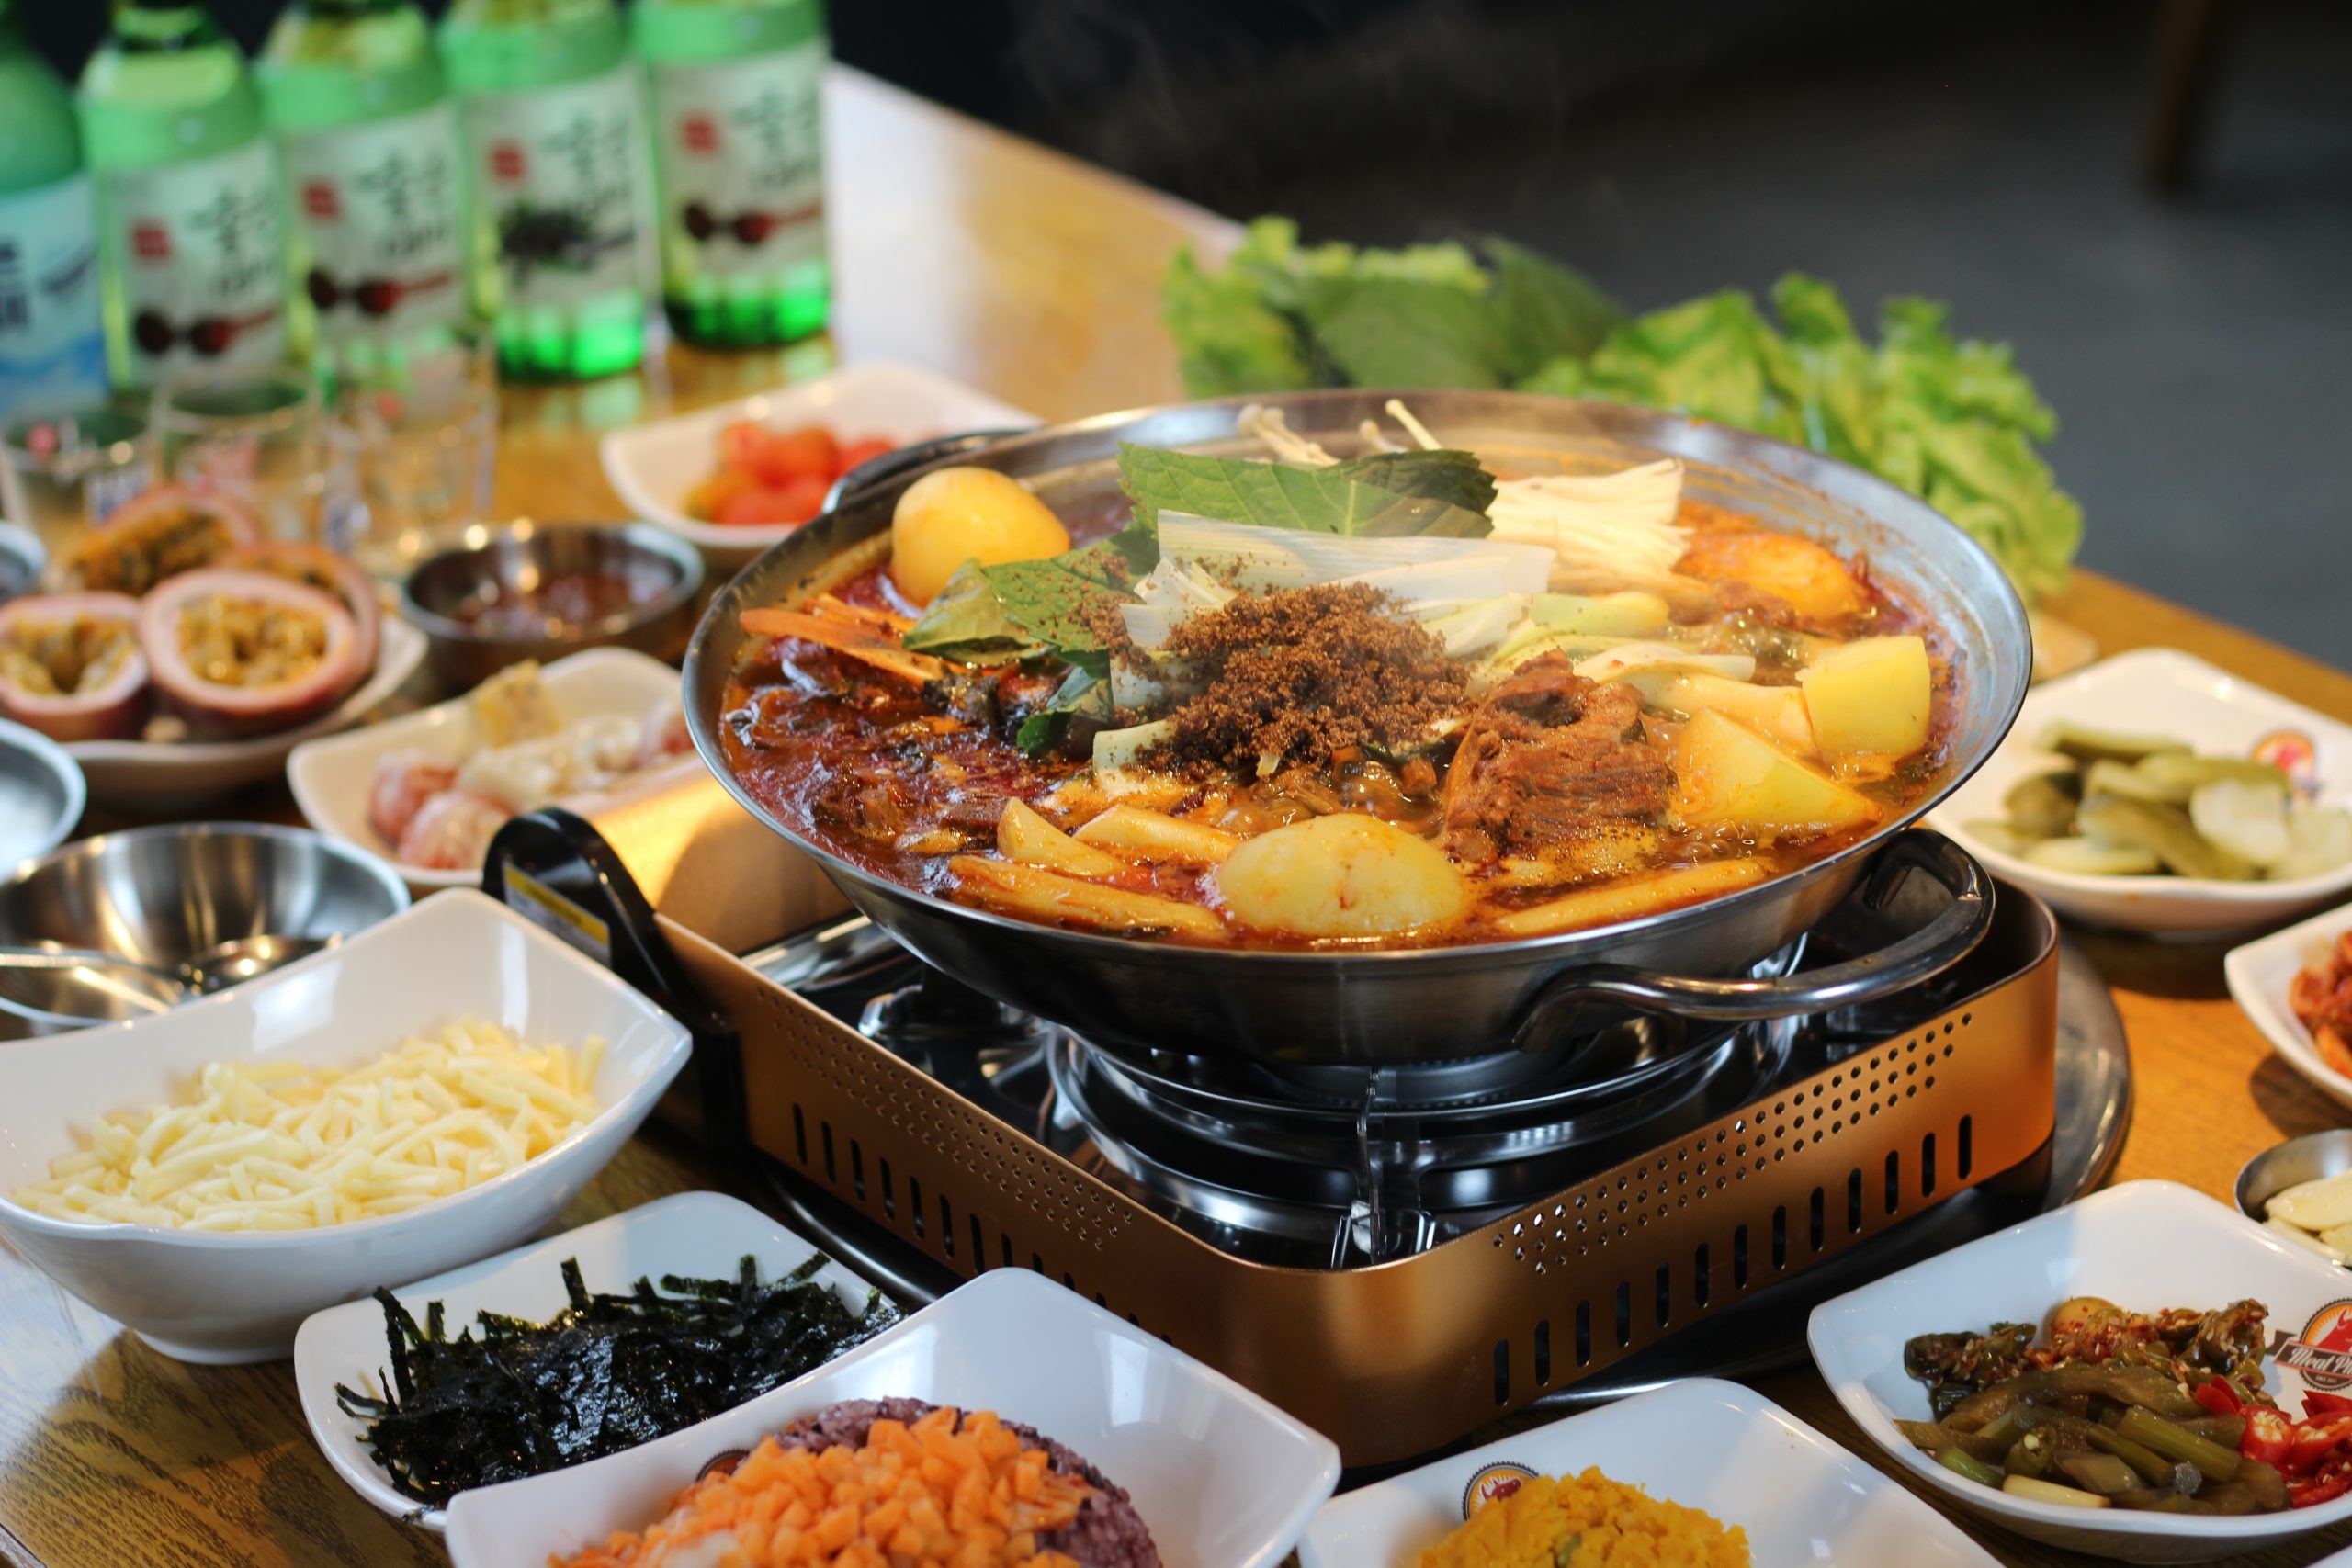 Canh xương khoai tây Hàn Quốc là món ăn giúp ấm bụng ngày lạnh.